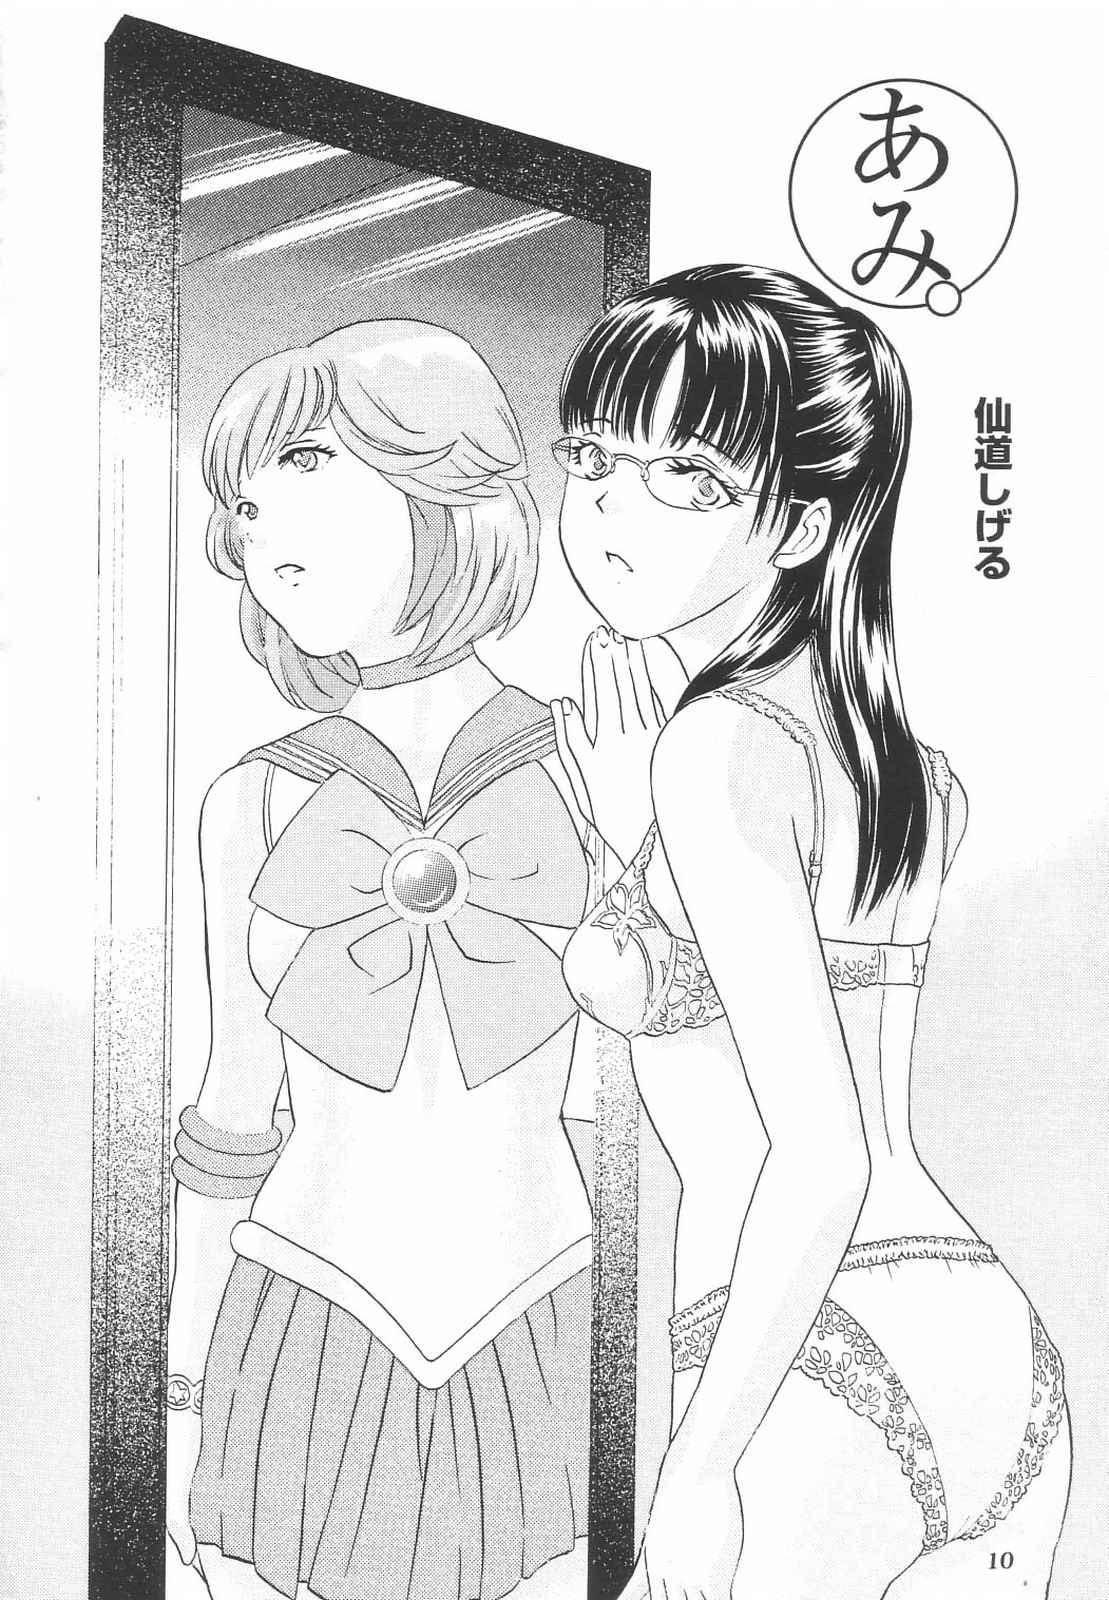 Letsdoeit Tokusatsu Magazine x 2003 Fuyu Gou - Sailor moon Ichigo 100 Asstomouth - Page 12